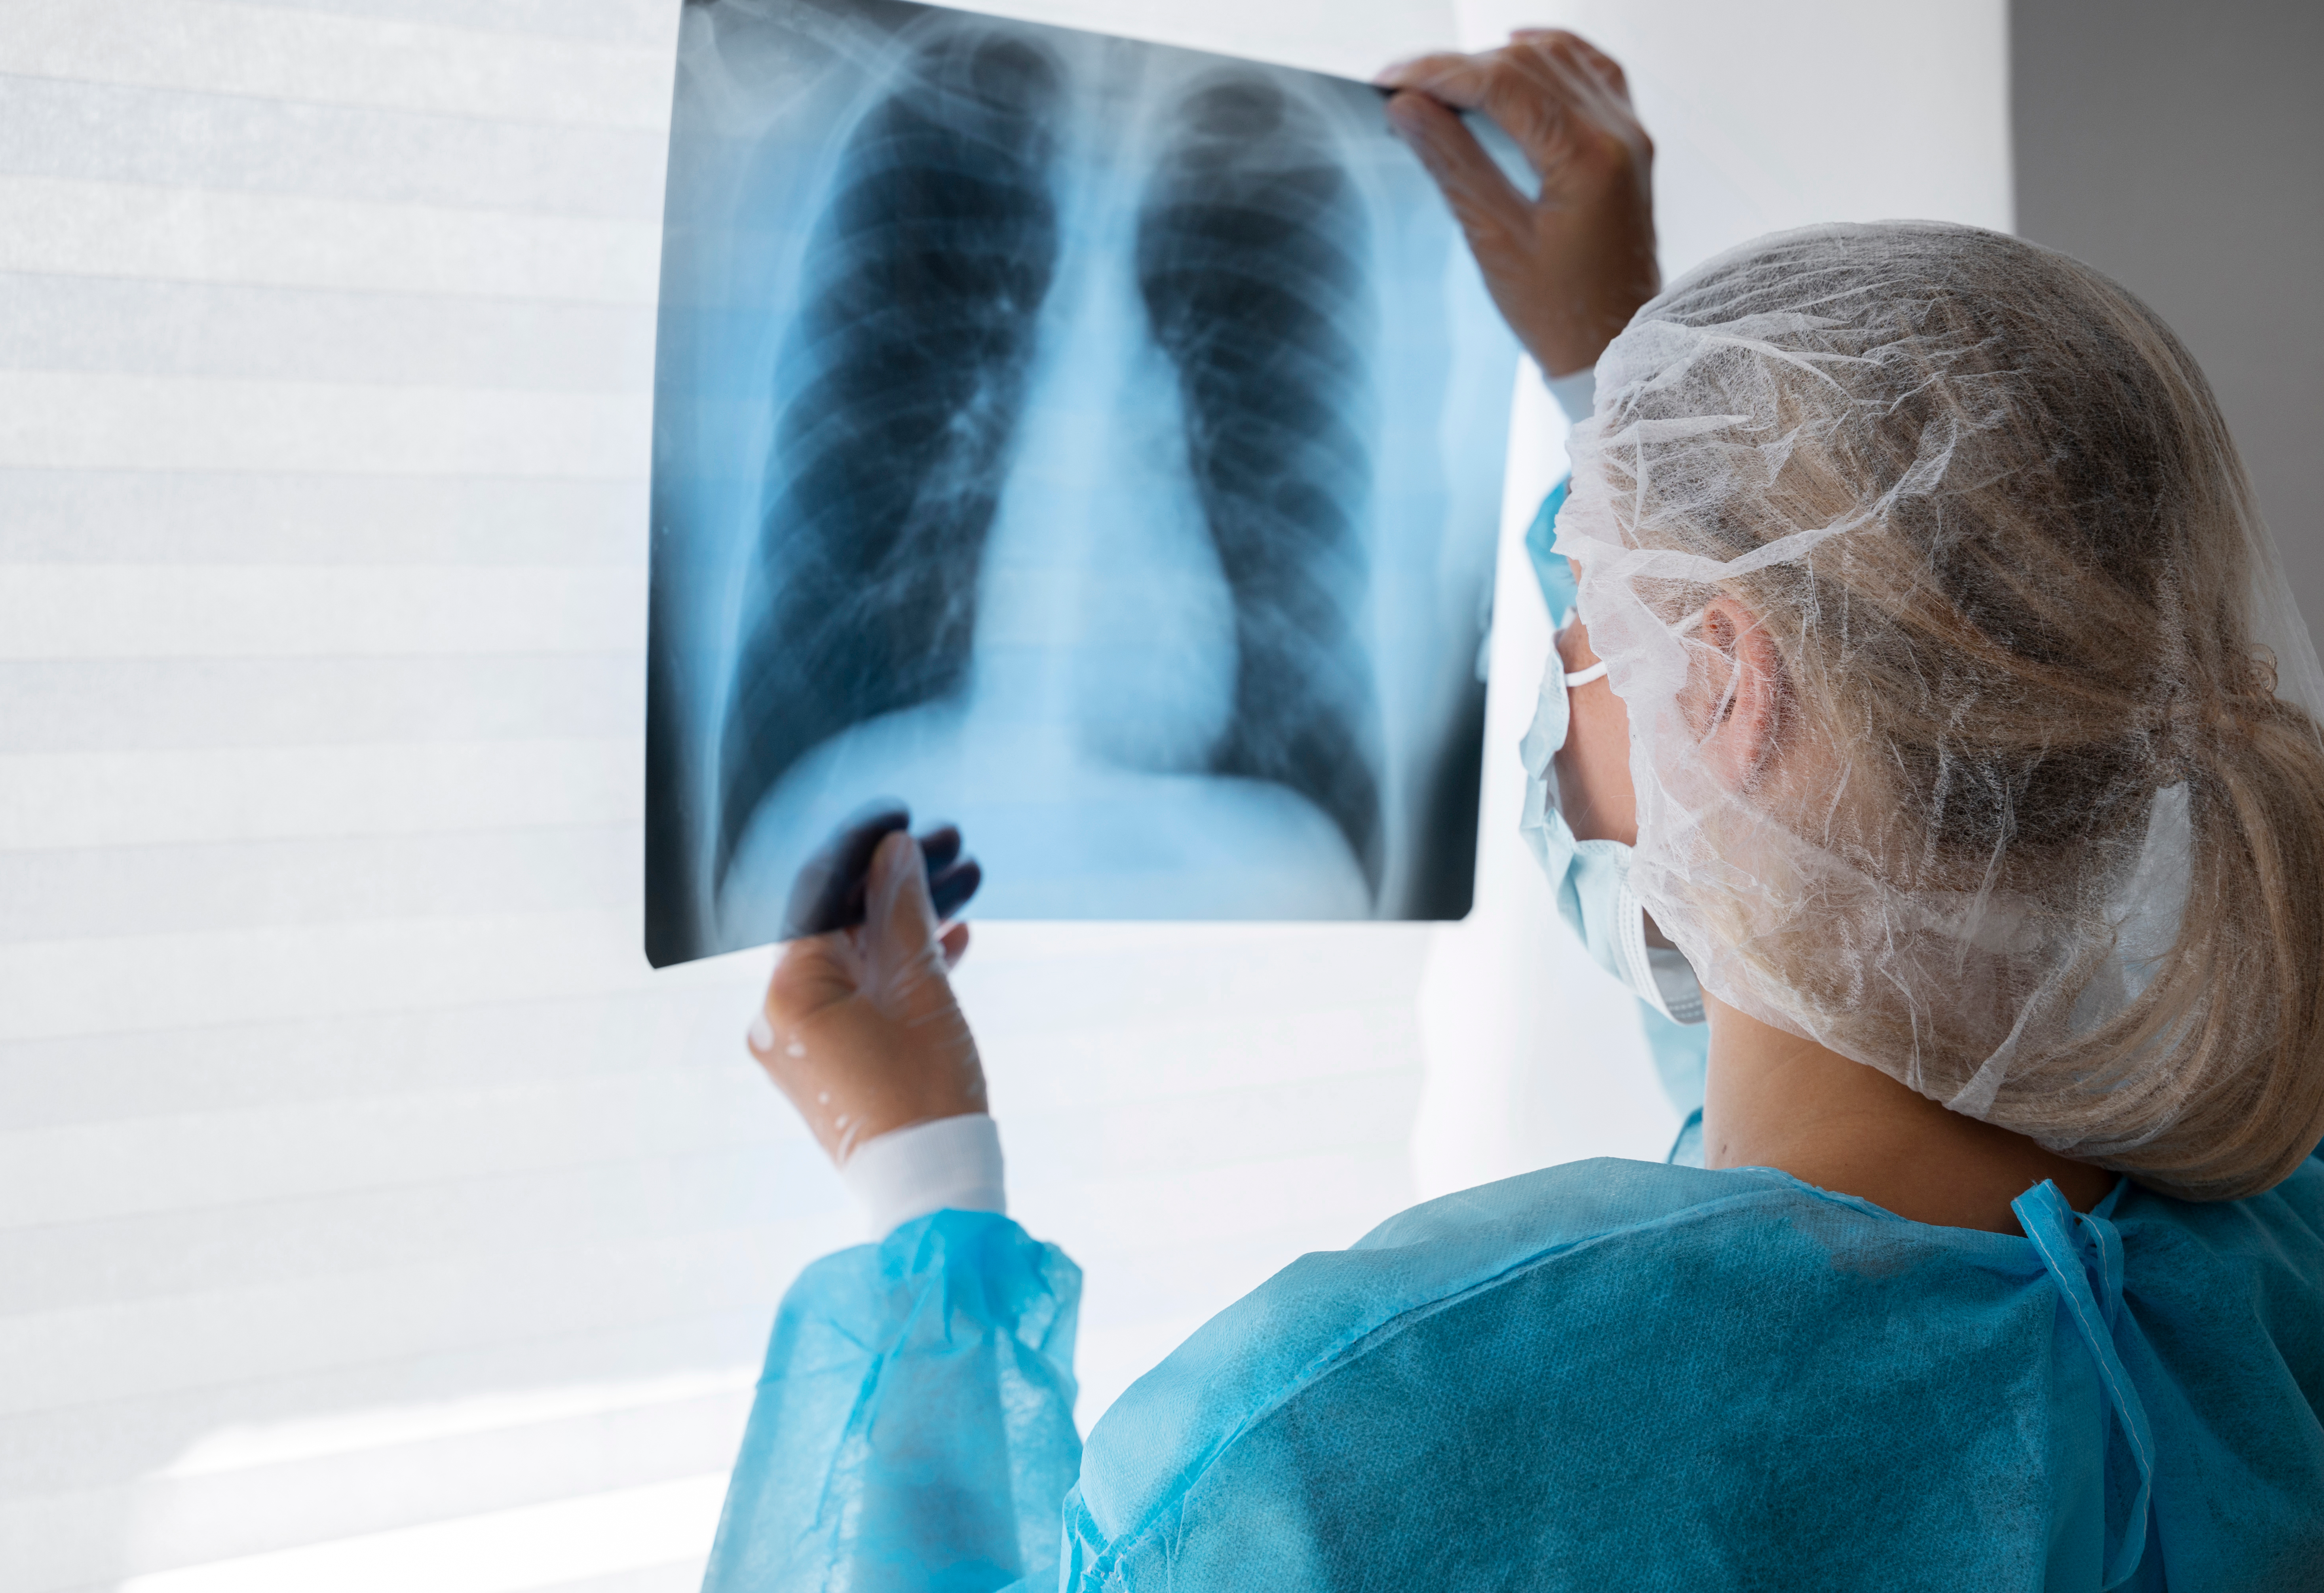 Павловопосадцы смогут пройти диагностику туберкулеза на новом рентген-аппарате